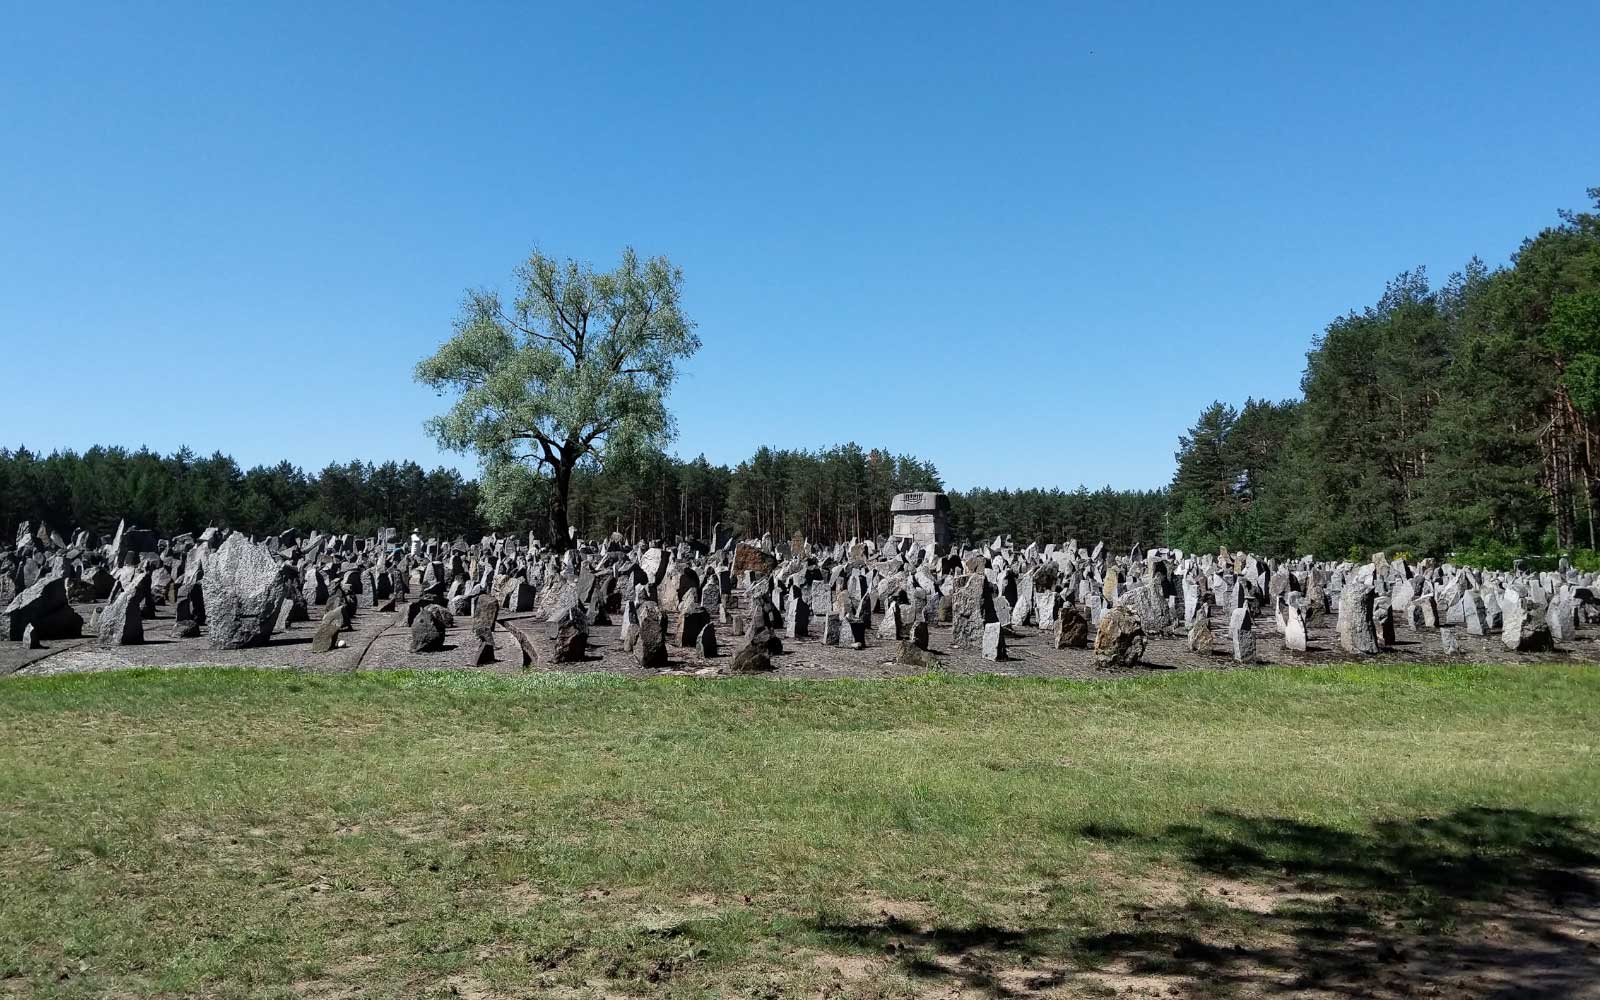 Treblinka: Day Trip from Warsaw